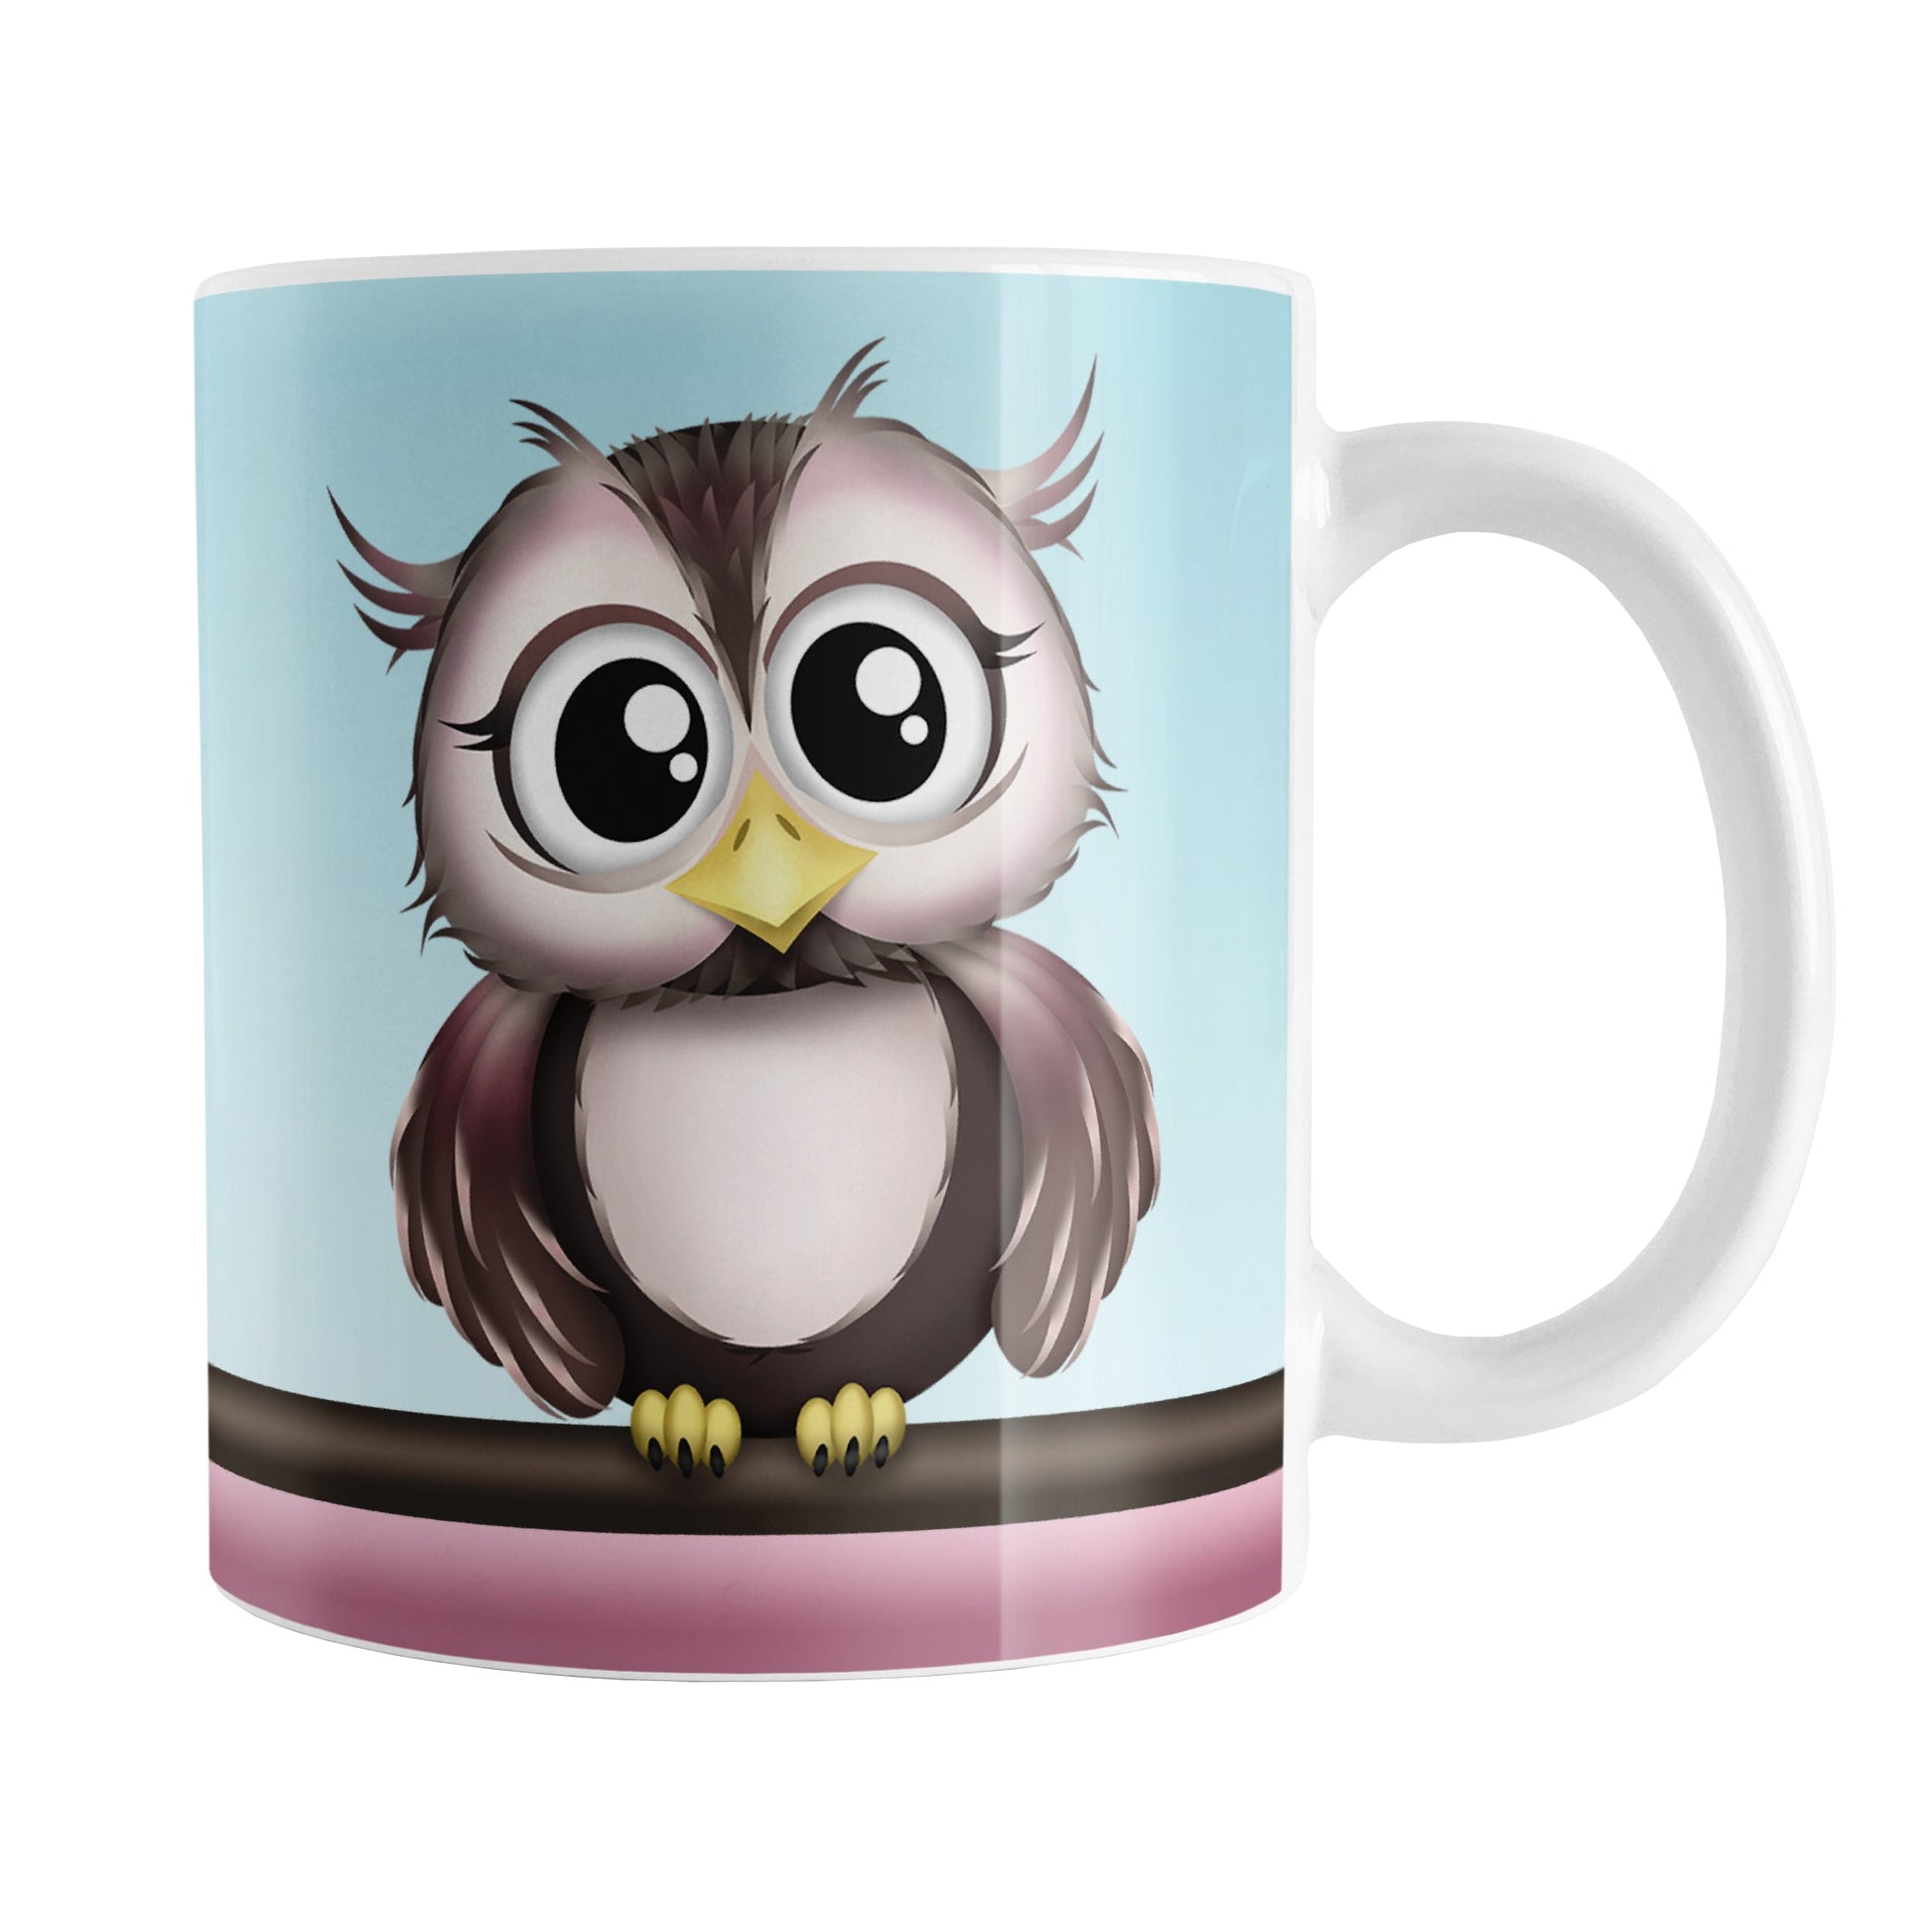 Adorable Pink and Brown Owl Mug (11oz) at Amy's Coffee Mugs